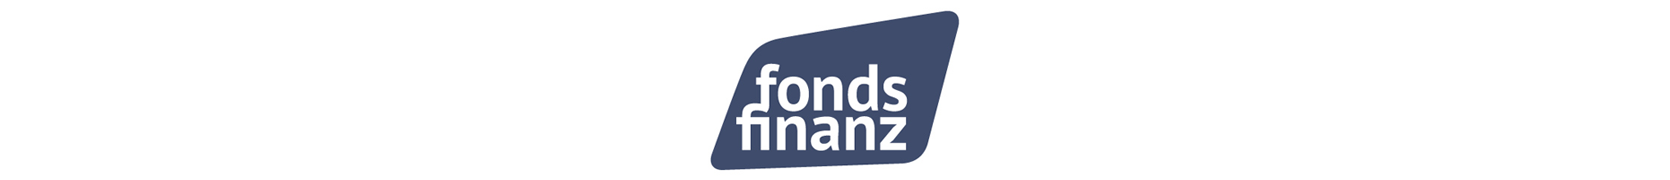 Fonds Finanz Kundenlogos Banner 2021_.png